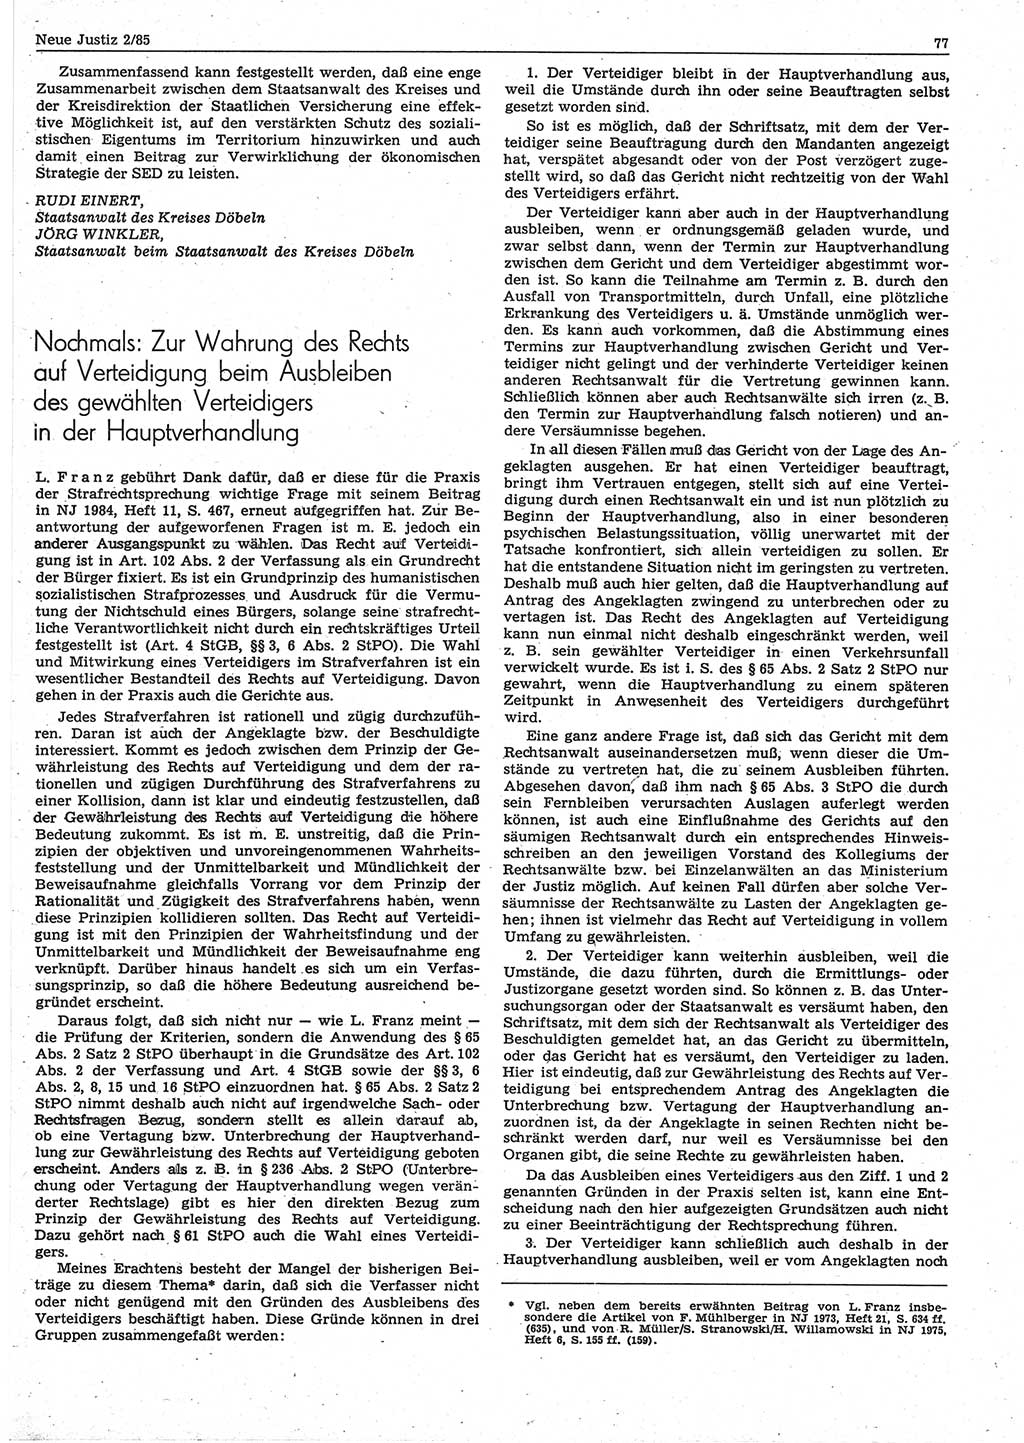 Neue Justiz (NJ), Zeitschrift für sozialistisches Recht und Gesetzlichkeit [Deutsche Demokratische Republik (DDR)], 39. Jahrgang 1985, Seite 77 (NJ DDR 1985, S. 77)